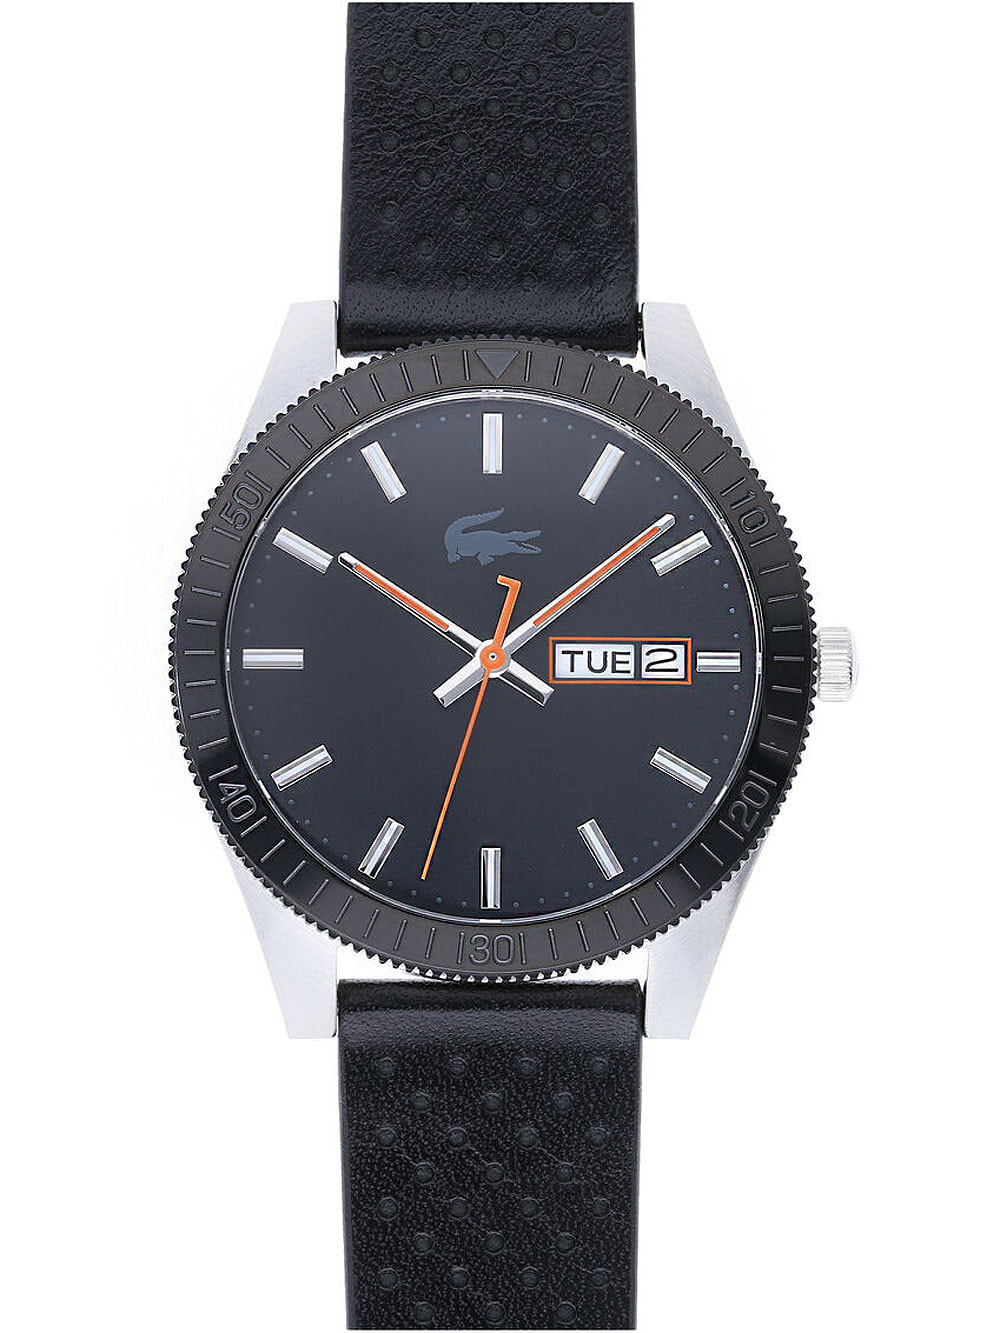 Мужские наручные часы с черным кожаным ремешком Lacoste 2010982 Legacy mens 42mm 5ATM